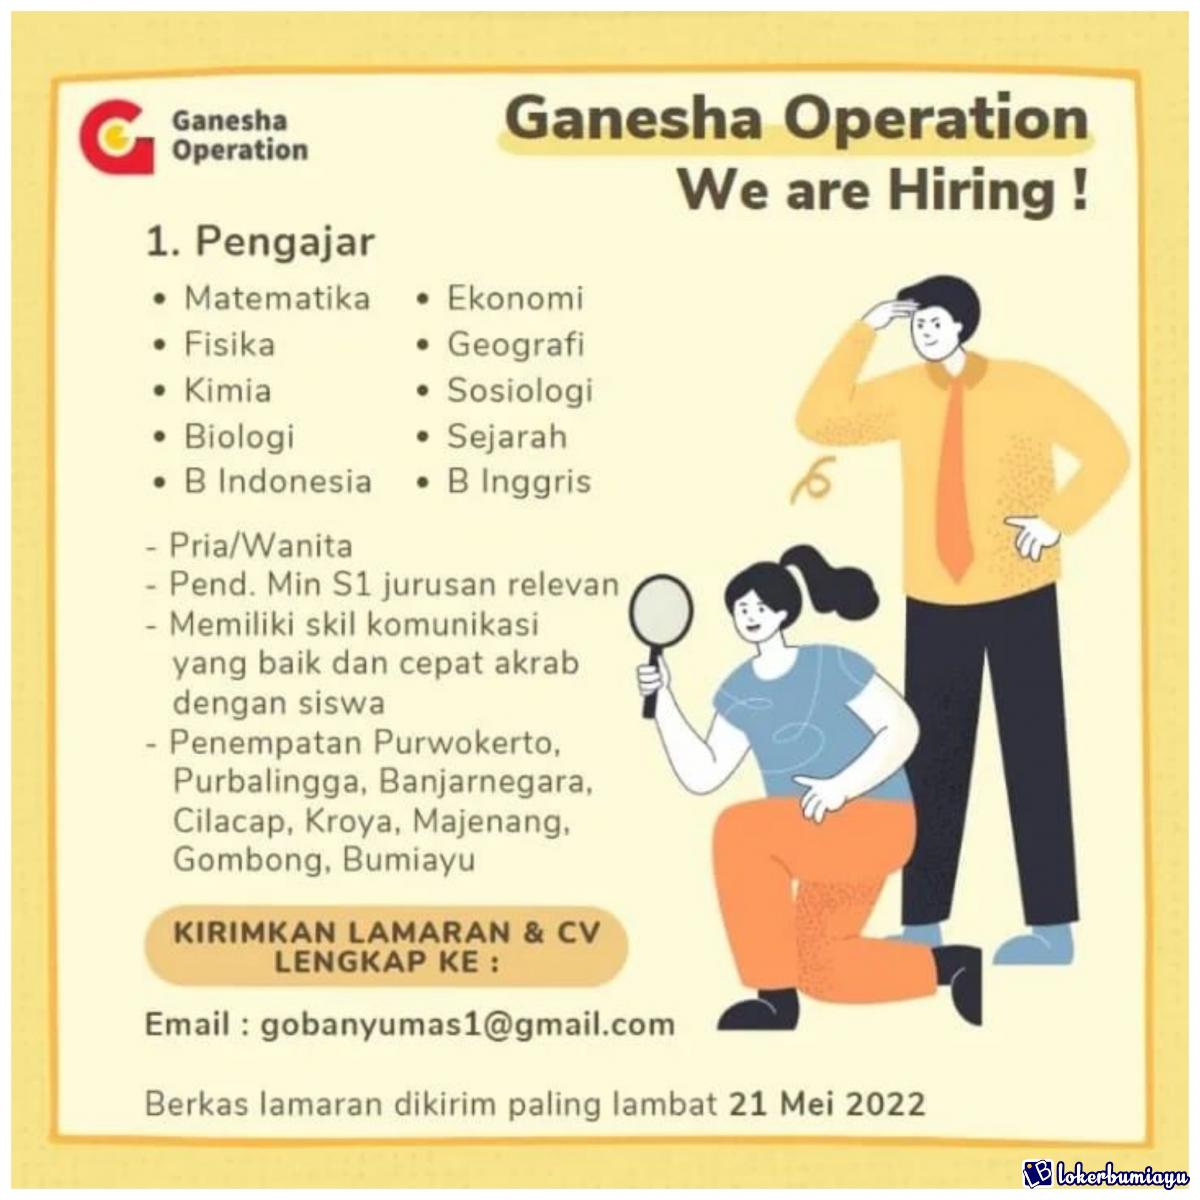 Ganesha Operation